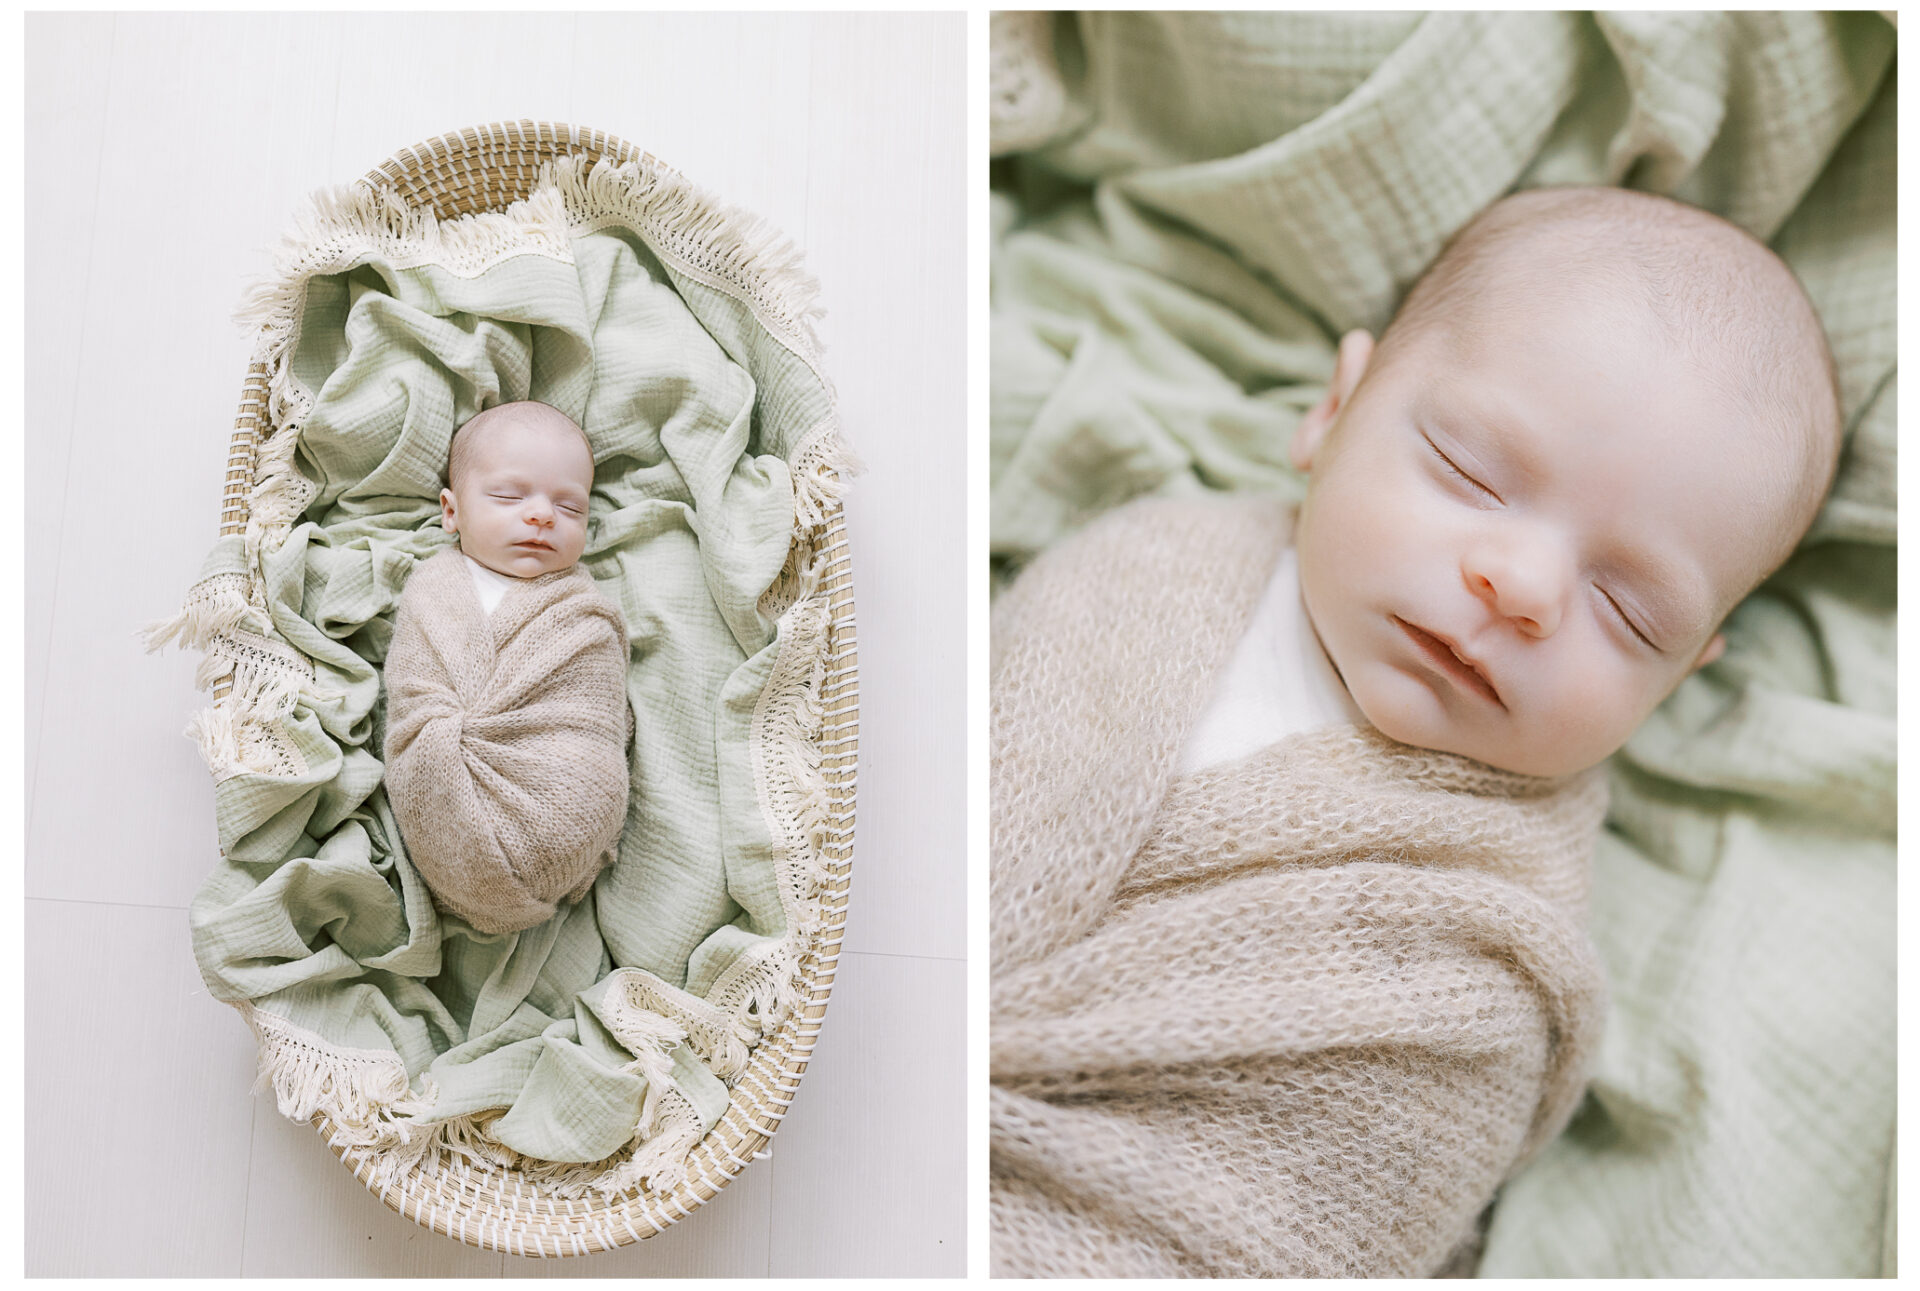 Newborn baby boy swaddled in a cozy basket